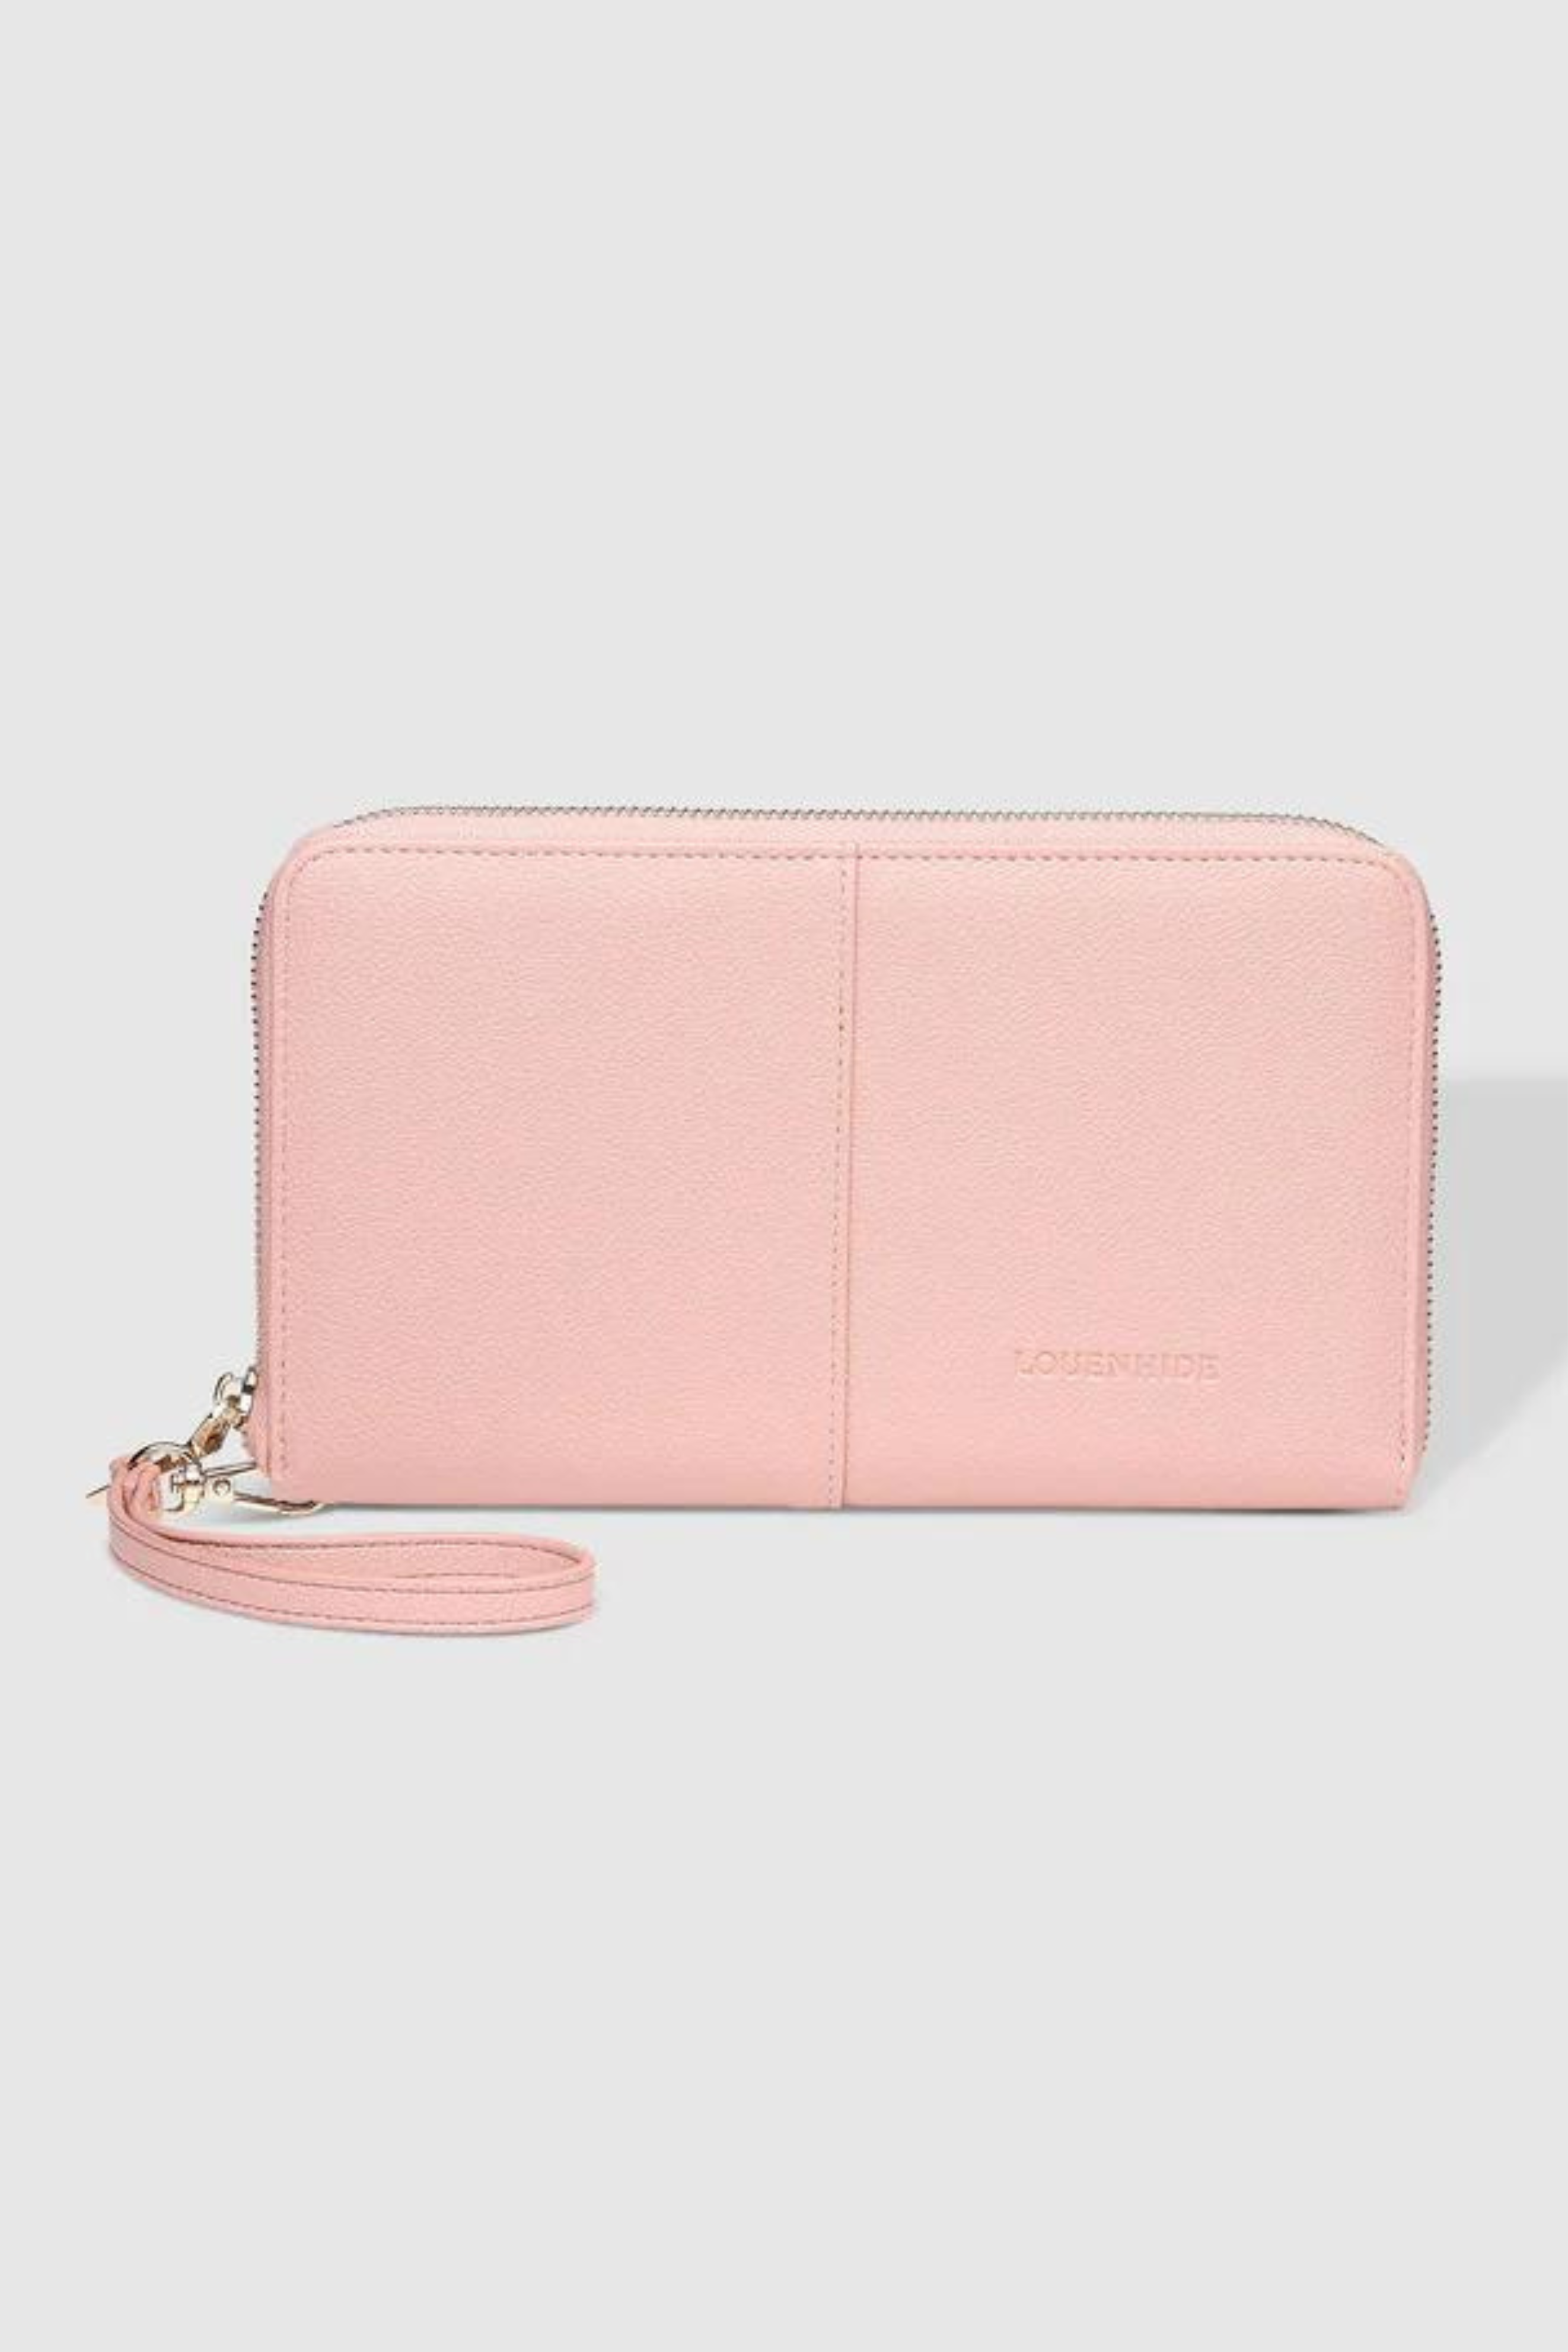 Arabella Travel Wallet - Blush Pink